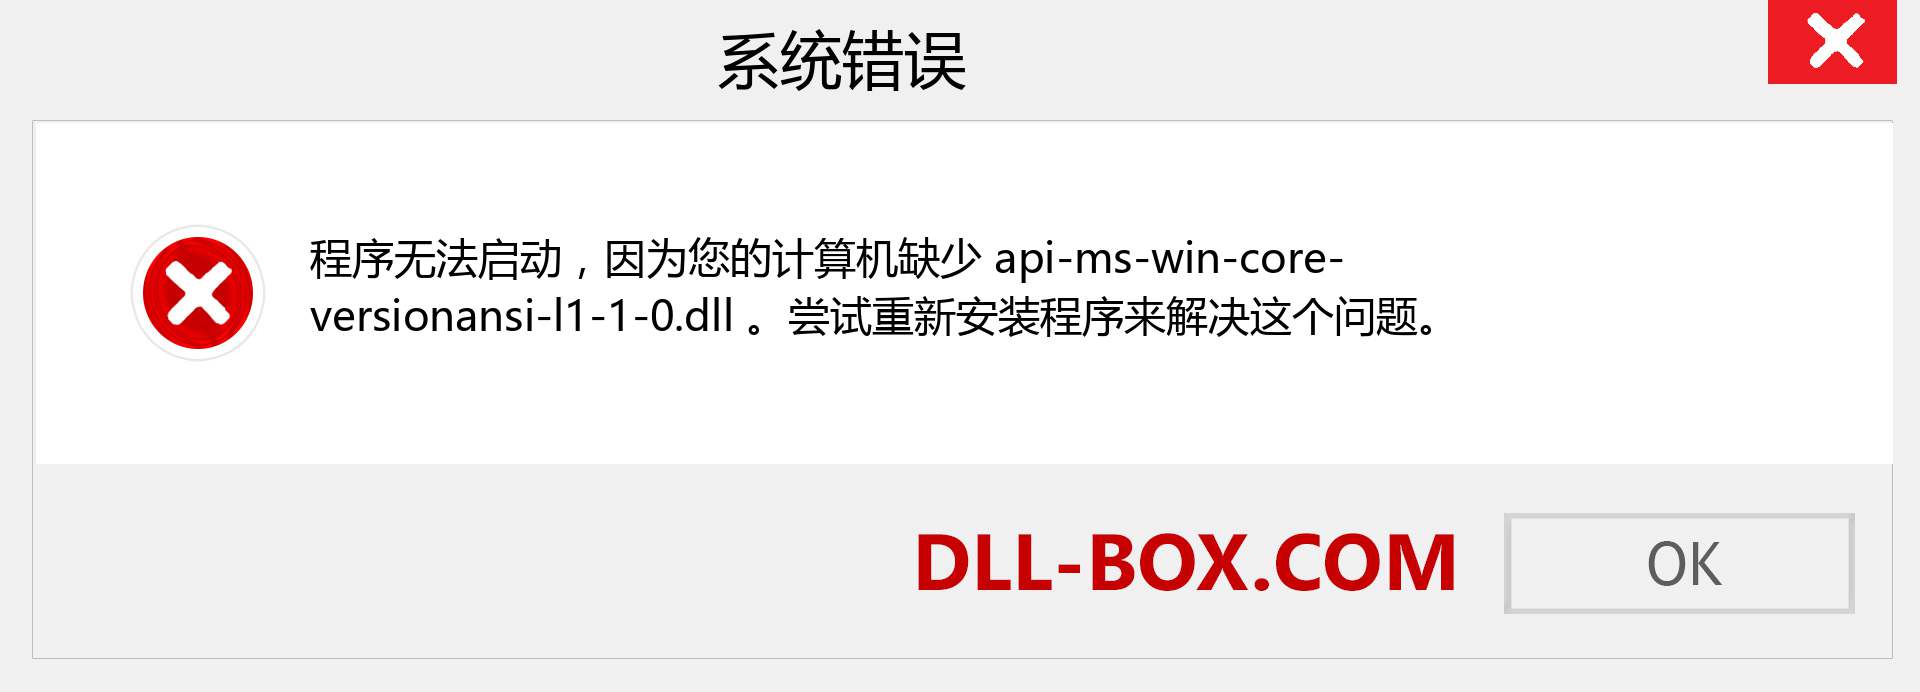 api-ms-win-core-versionansi-l1-1-0.dll 文件丢失？。 适用于 Windows 7、8、10 的下载 - 修复 Windows、照片、图像上的 api-ms-win-core-versionansi-l1-1-0 dll 丢失错误